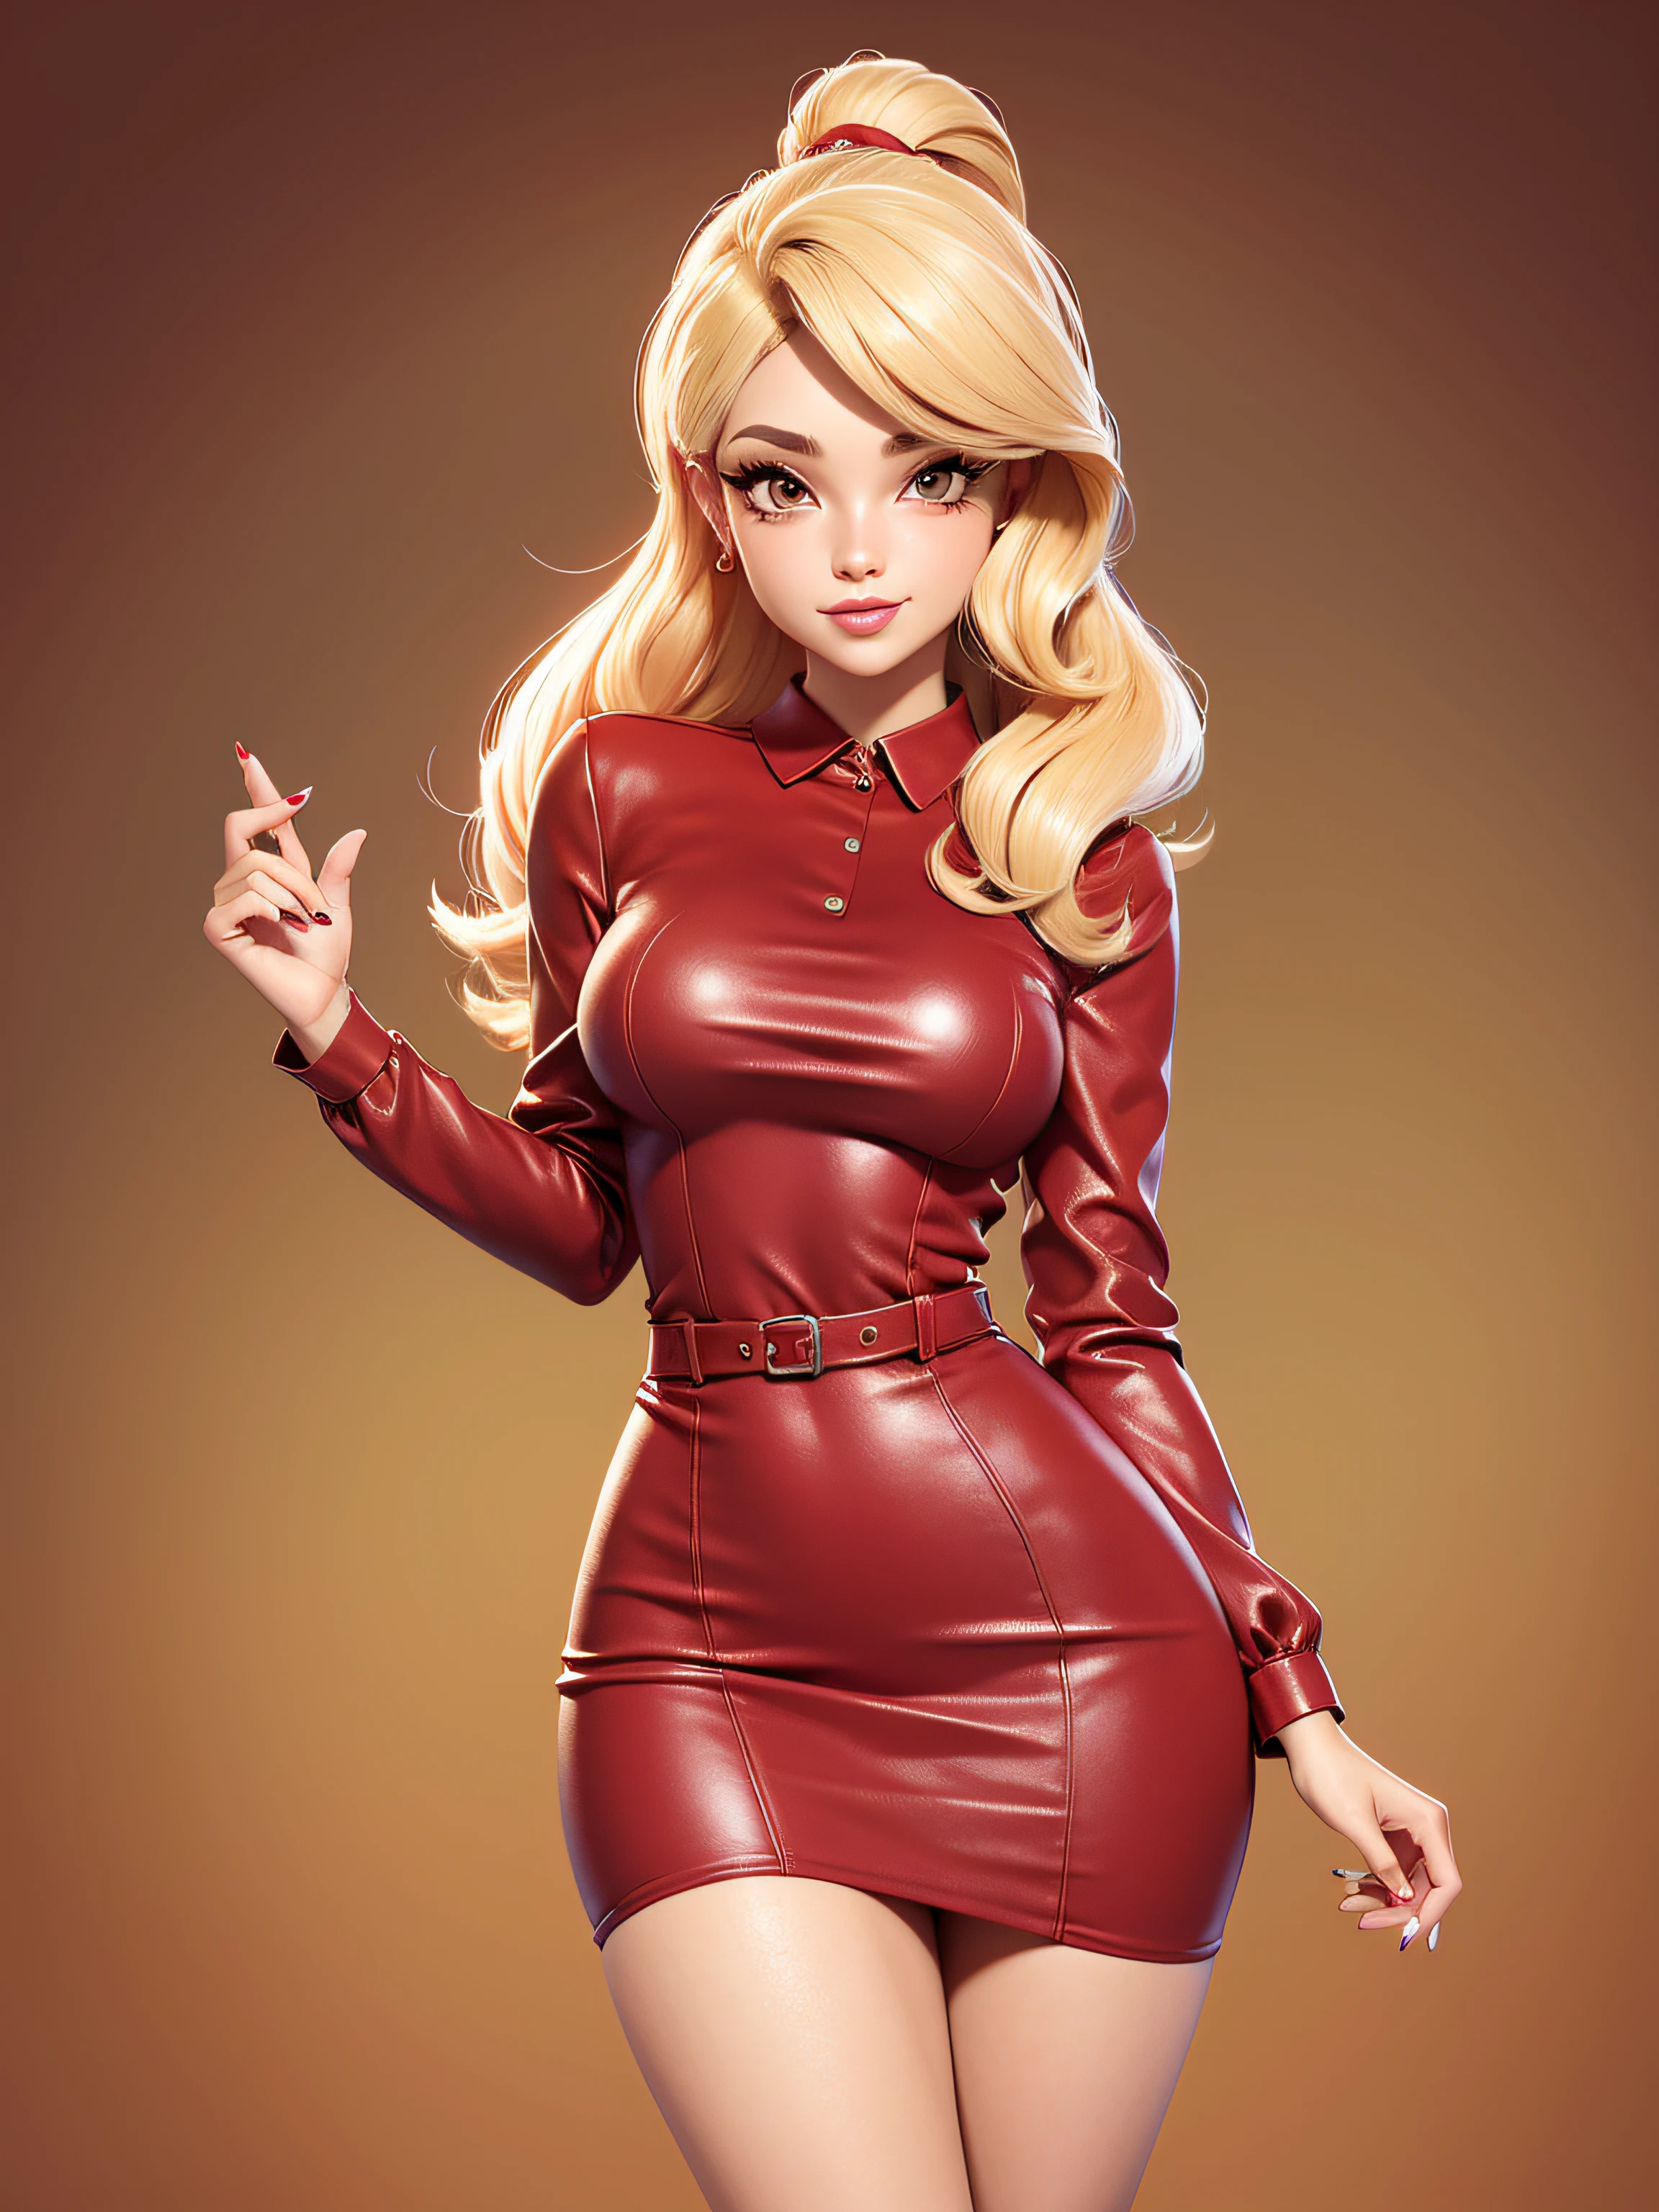  sexy Ganzkörper, rotes Kleid, blondes Haar, auffälliger Look, Cartoon-Stil der 50er Jahre, Vektorbild, keine Vorgeschichte, ClipArt-Stil